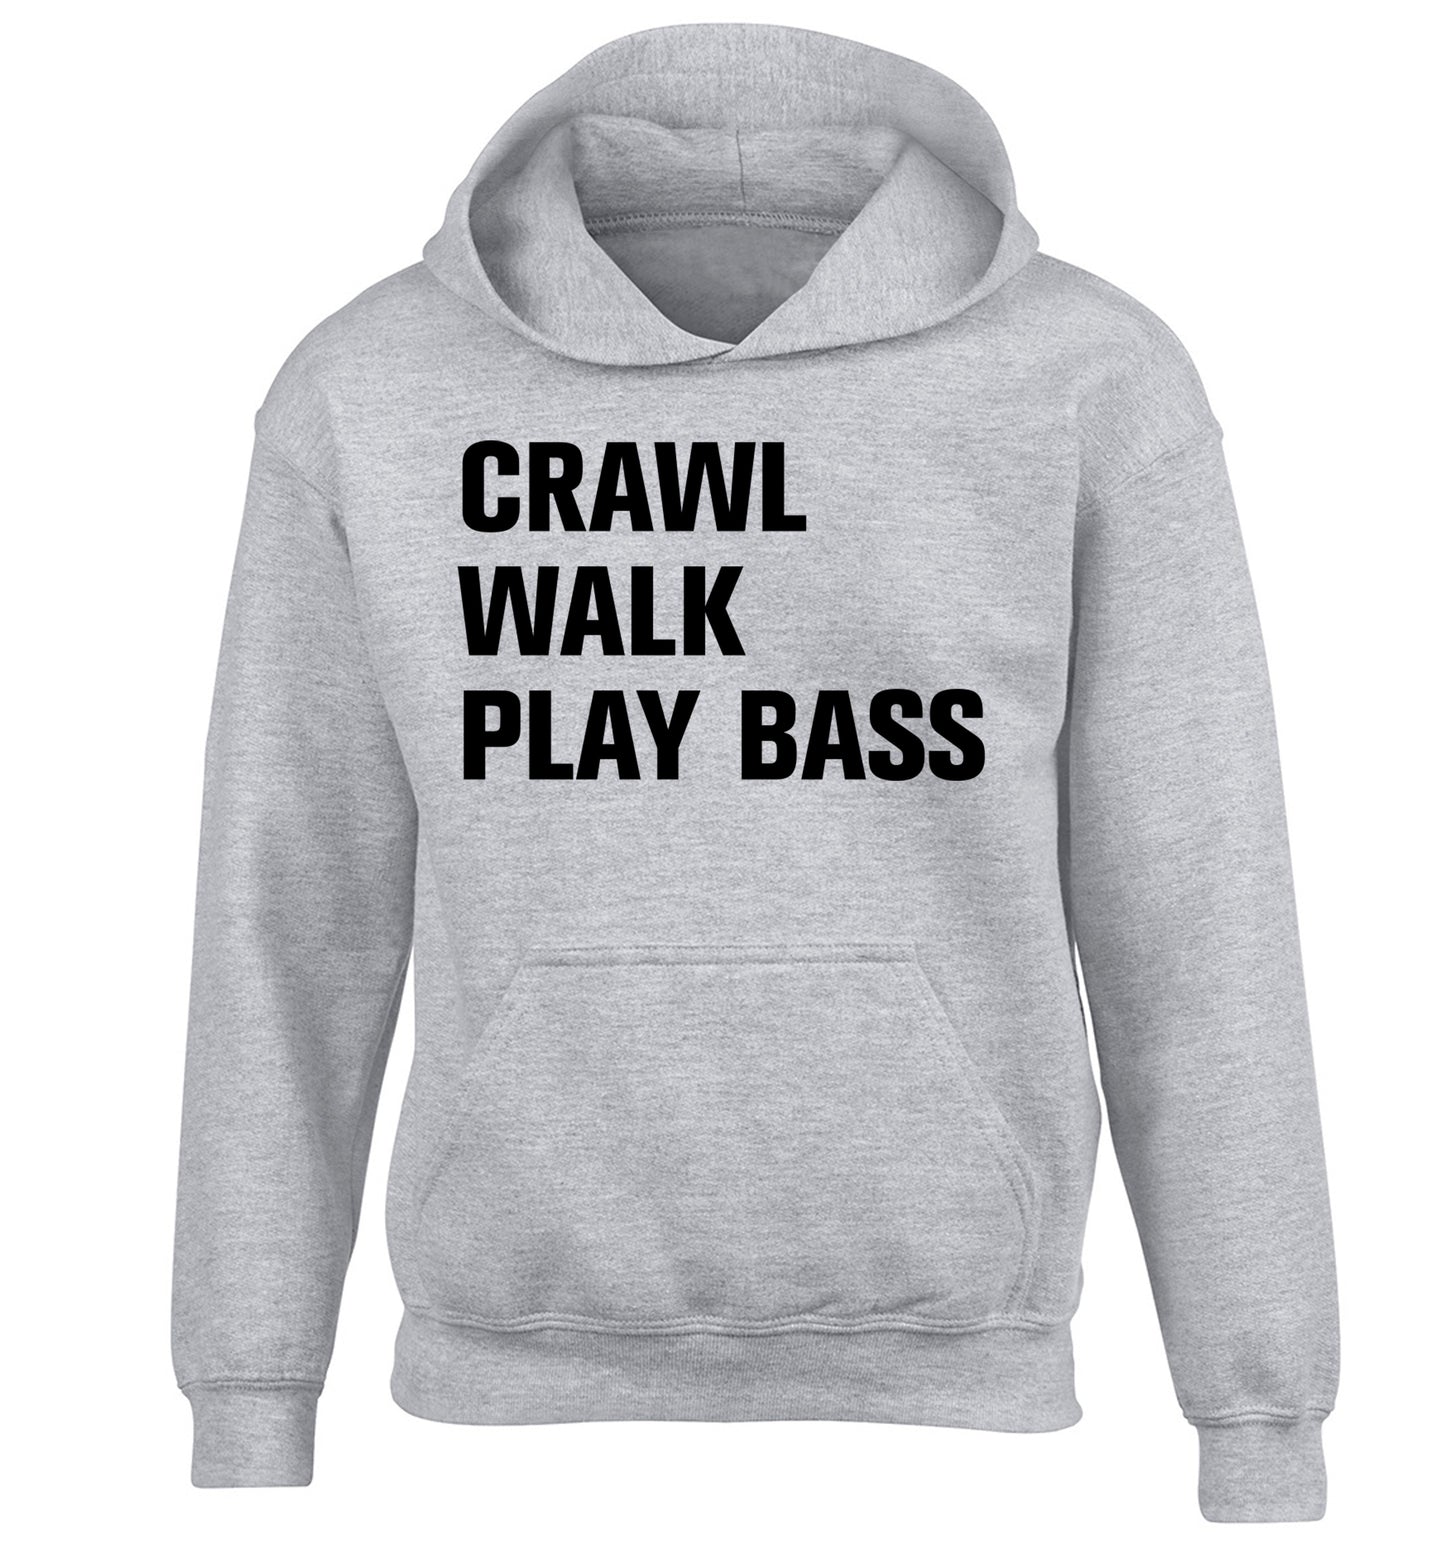 Crawl Walk Play Bass children's grey hoodie 12-13 Years